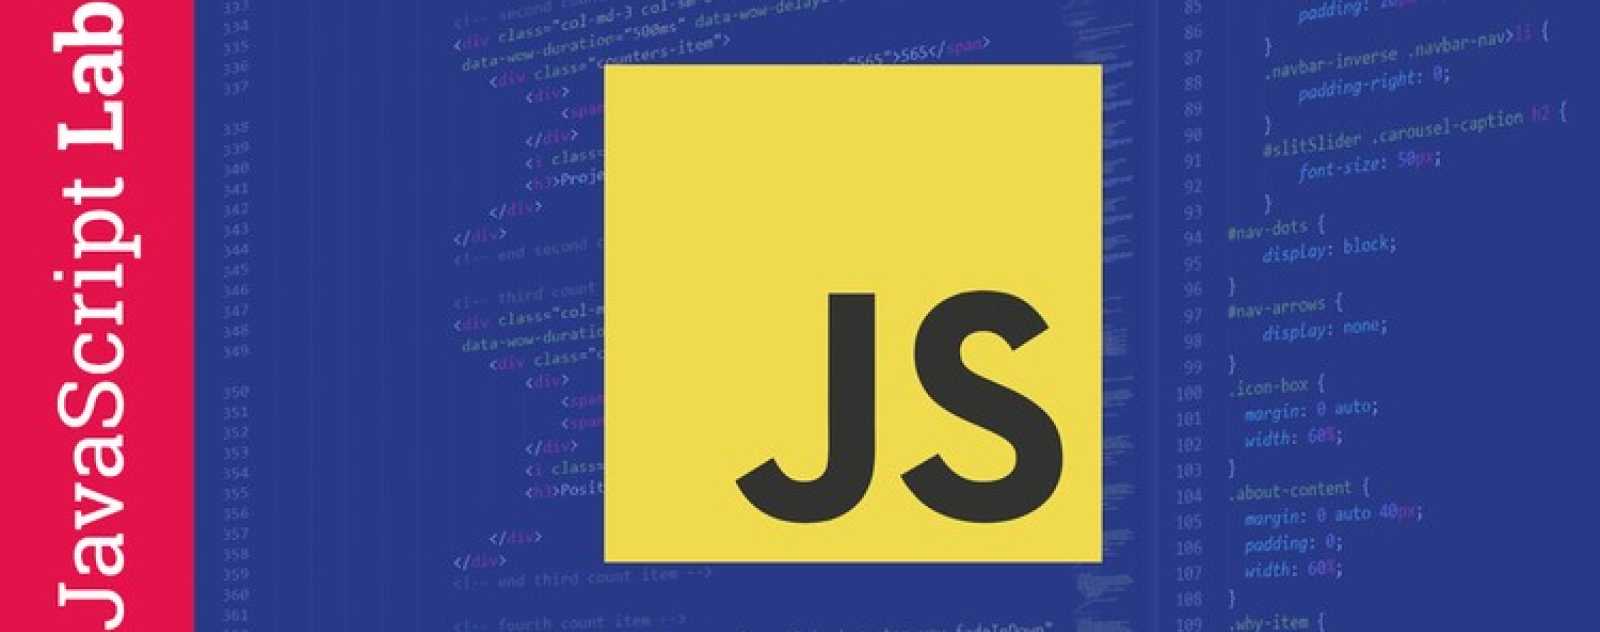 Apprendre Javascript: Cours Javascript Complet